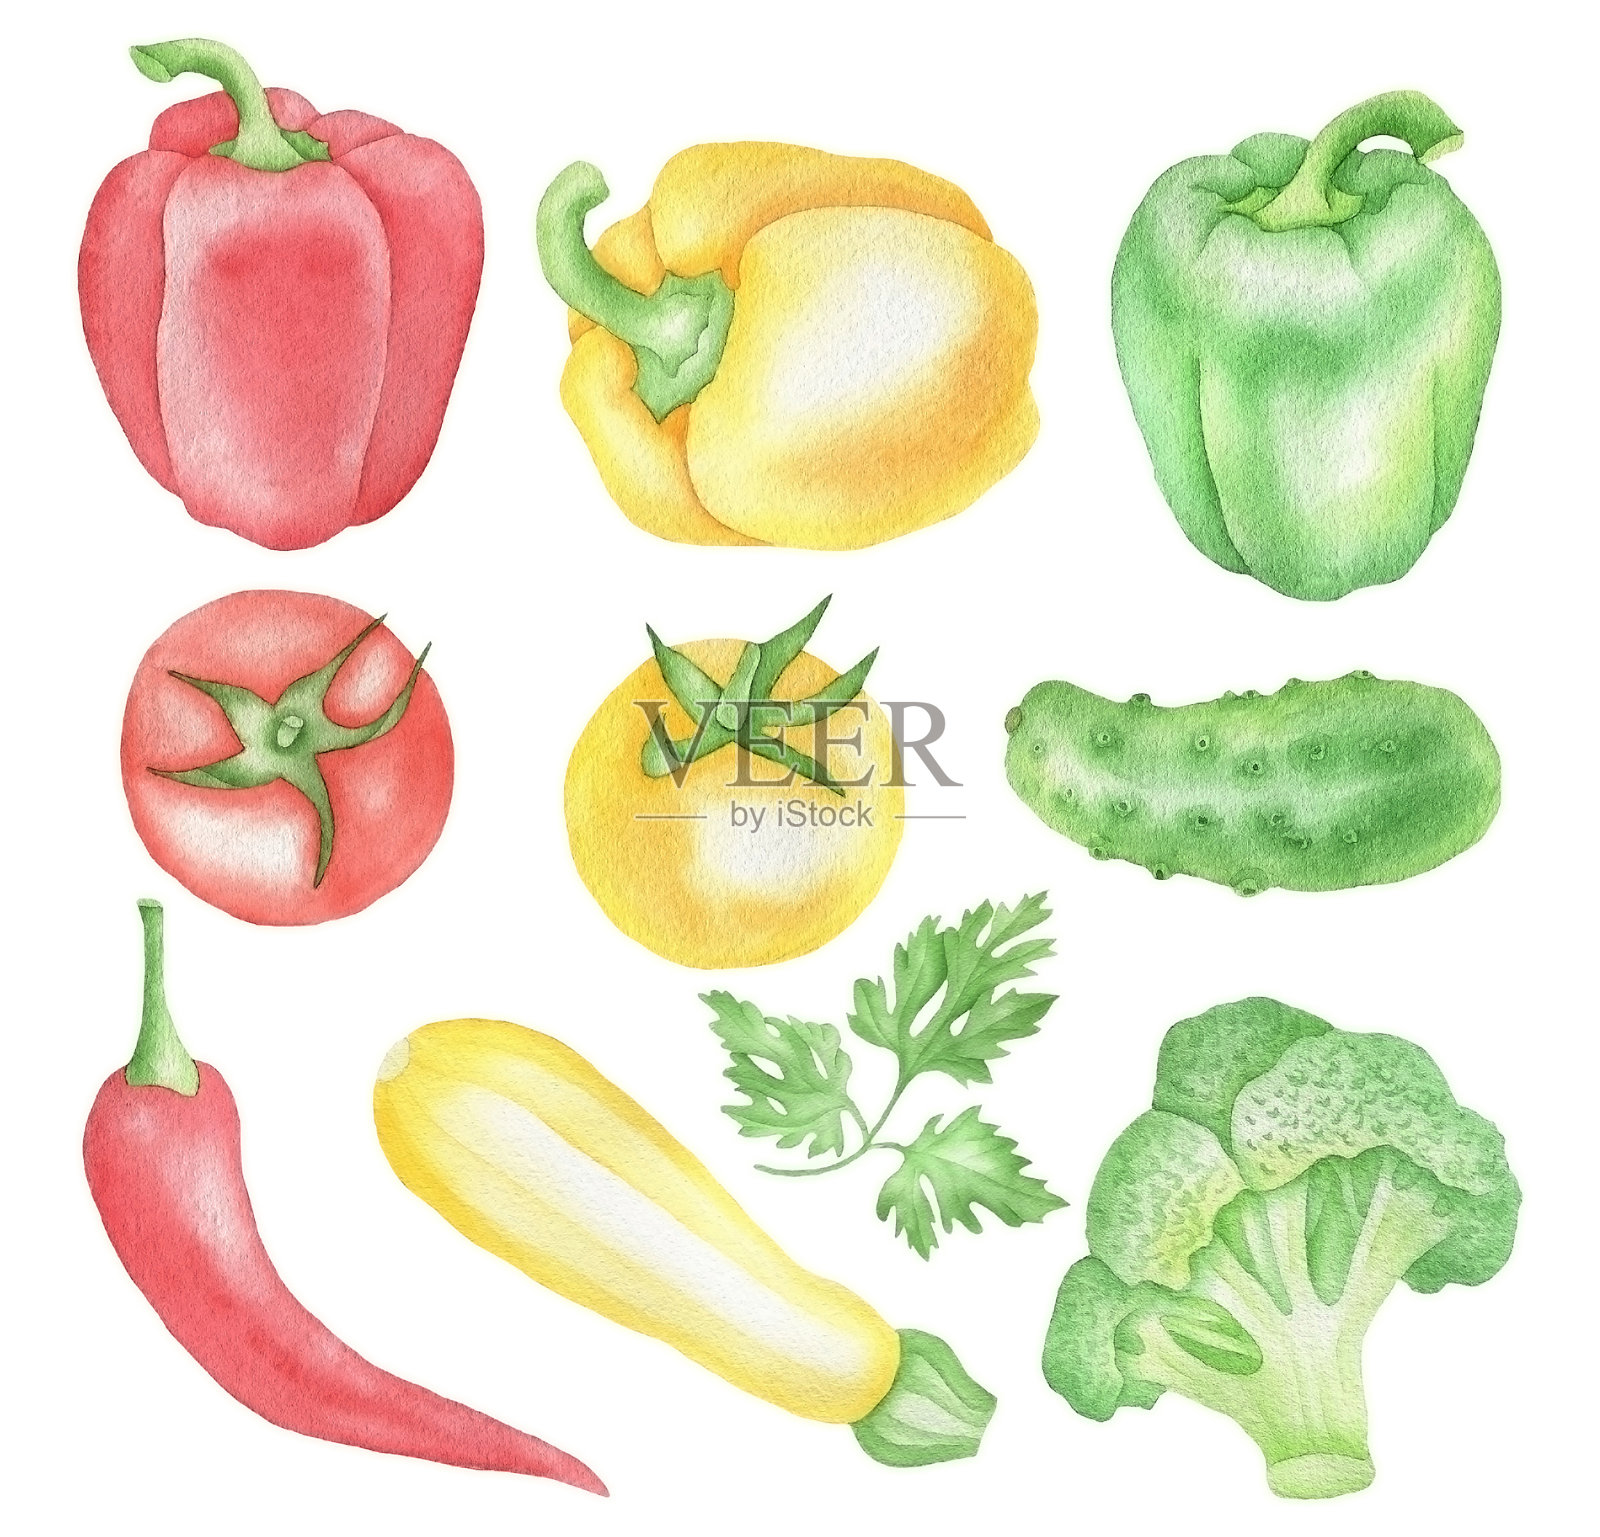 放在桌子上的蔬菜插画图片素材